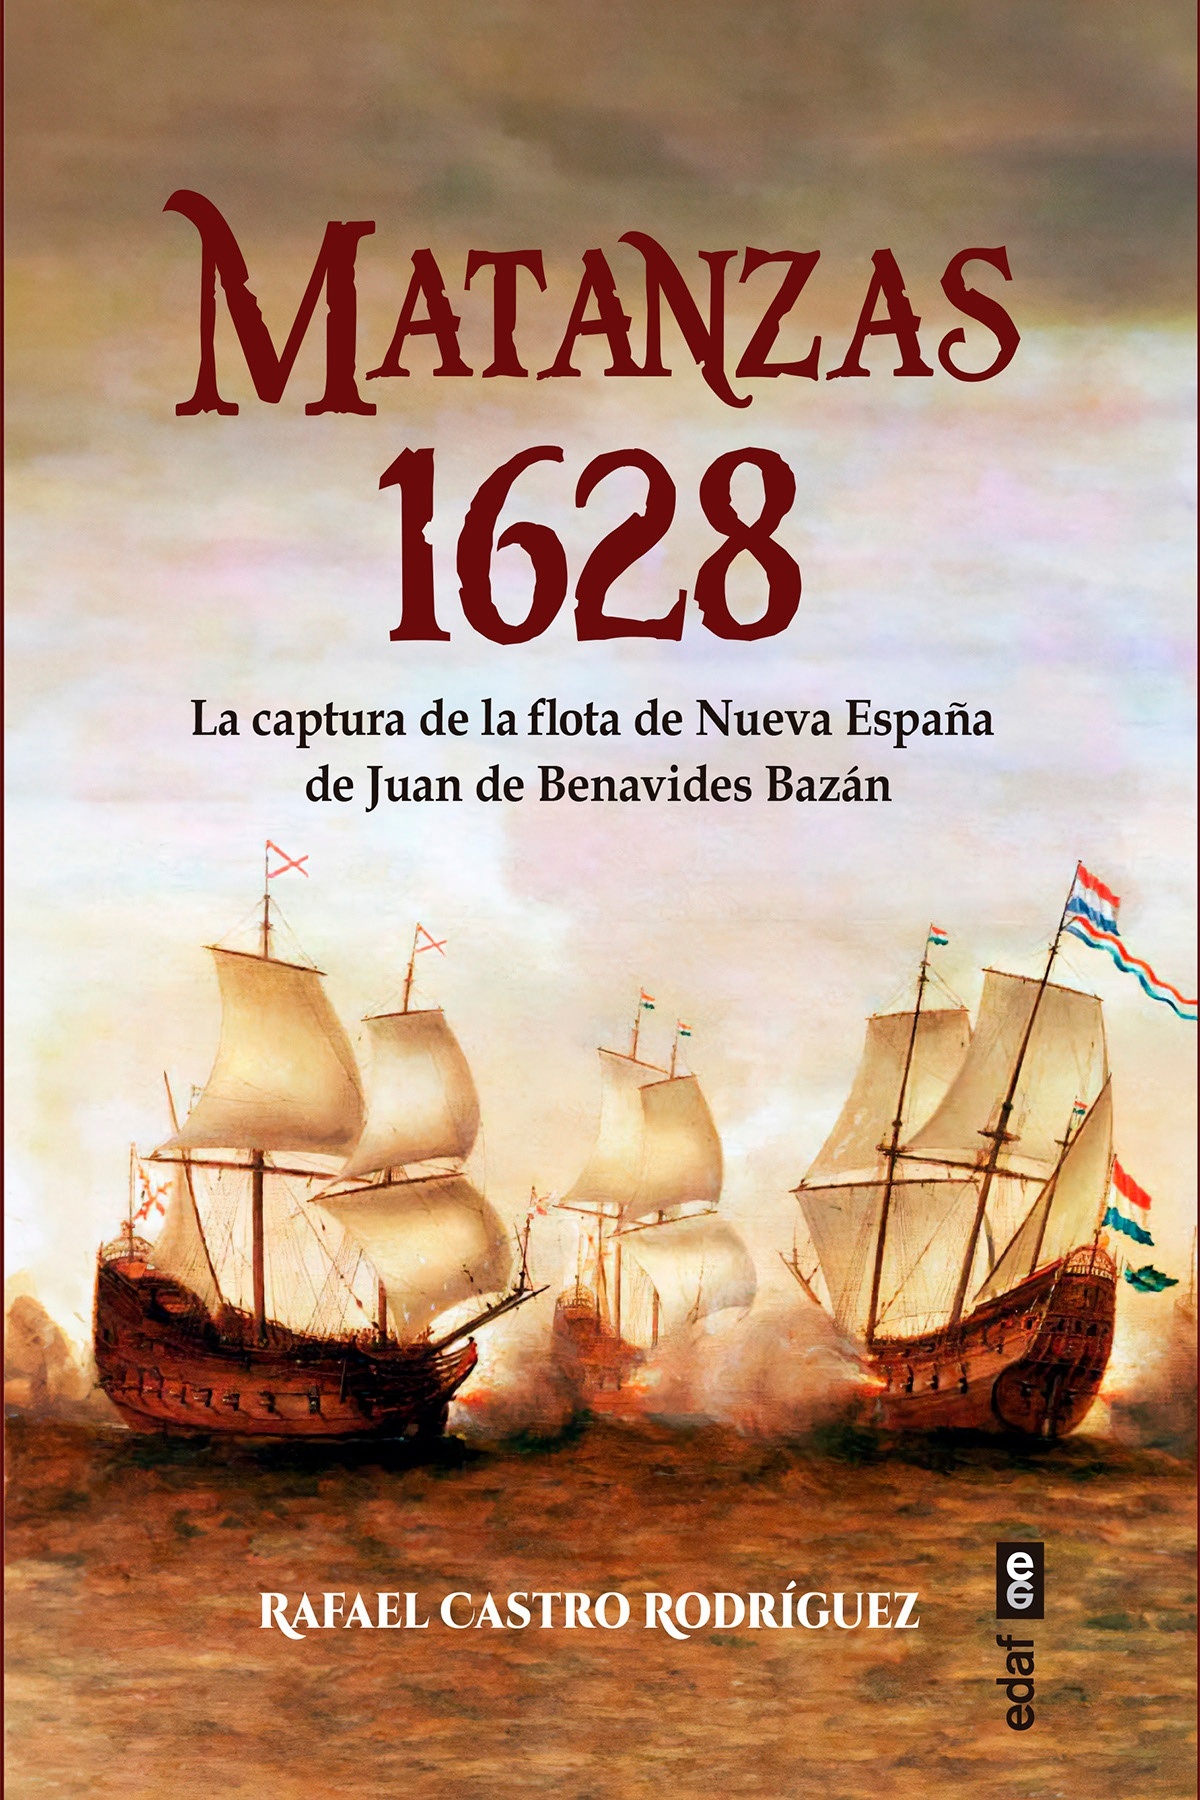 Matanzas 1628 "La captura de la flota de Nueva España de Juan de Benavides y Bazán"